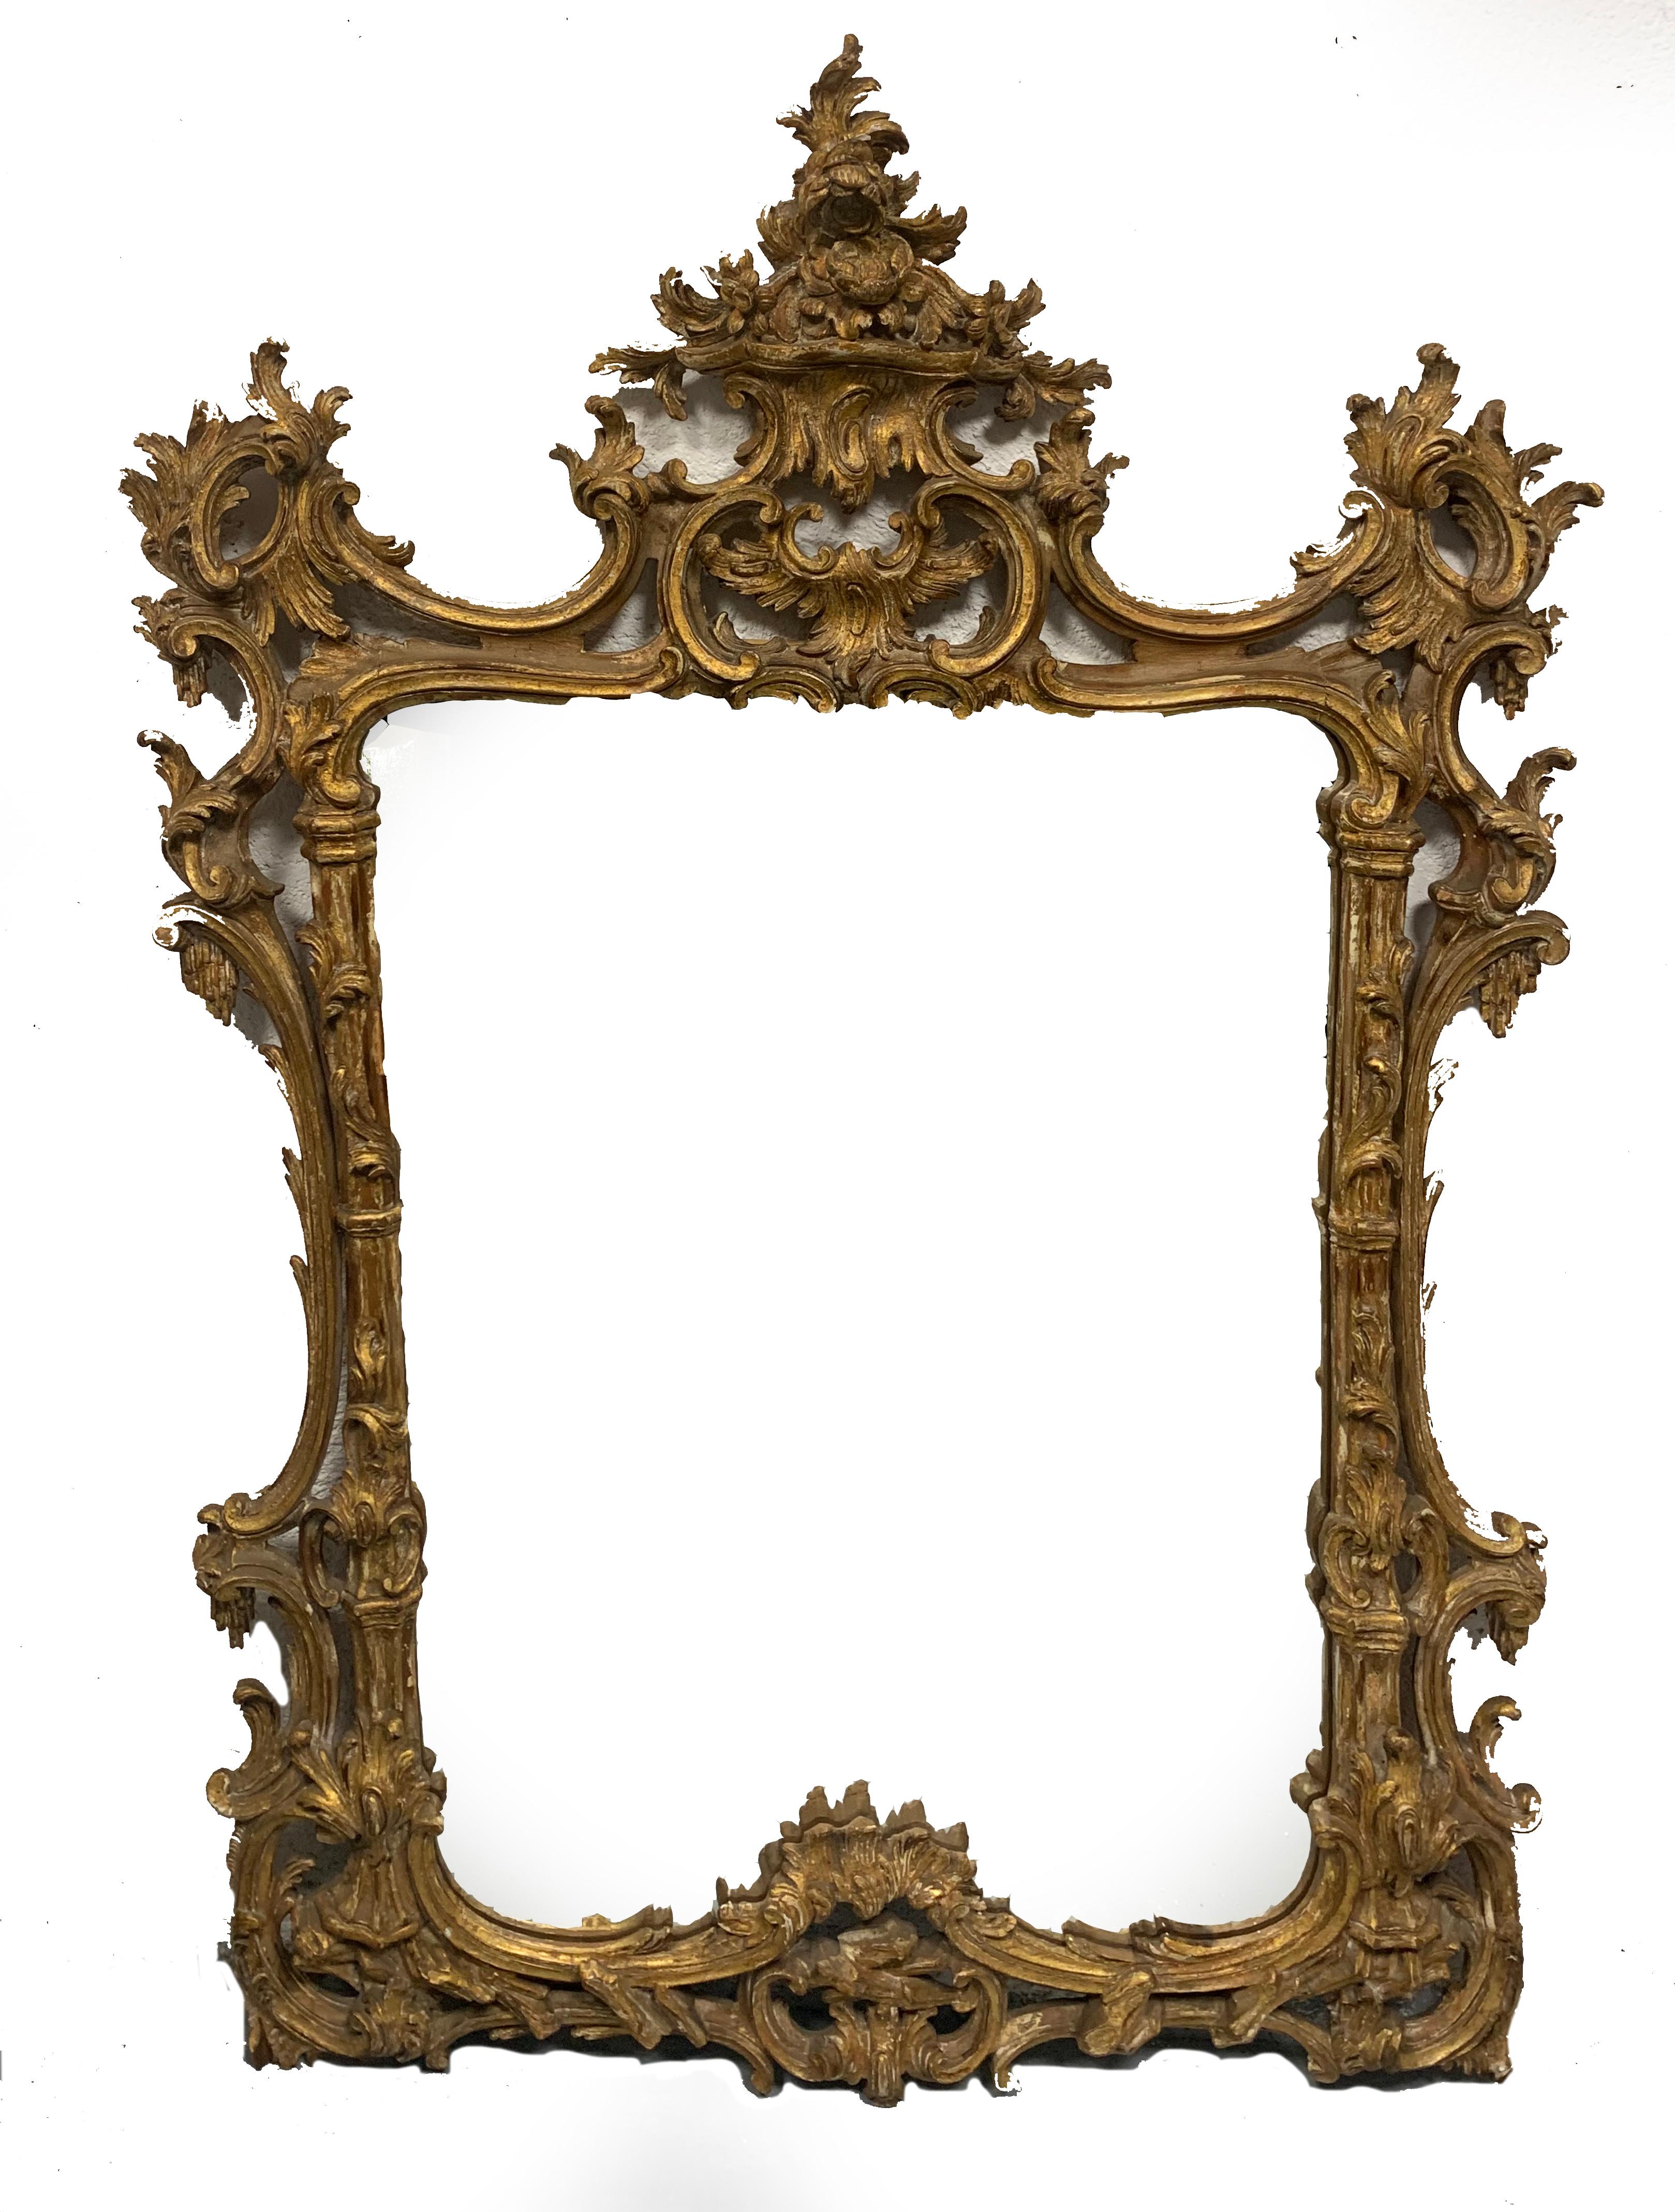 Schöner holzgeschnitzter goldener Spiegel mit zarter und robuster durchbrochener Schnitzerei. Die warme, vergoldete Holzoberfläche dieses Spiegels ist außergewöhnlich.